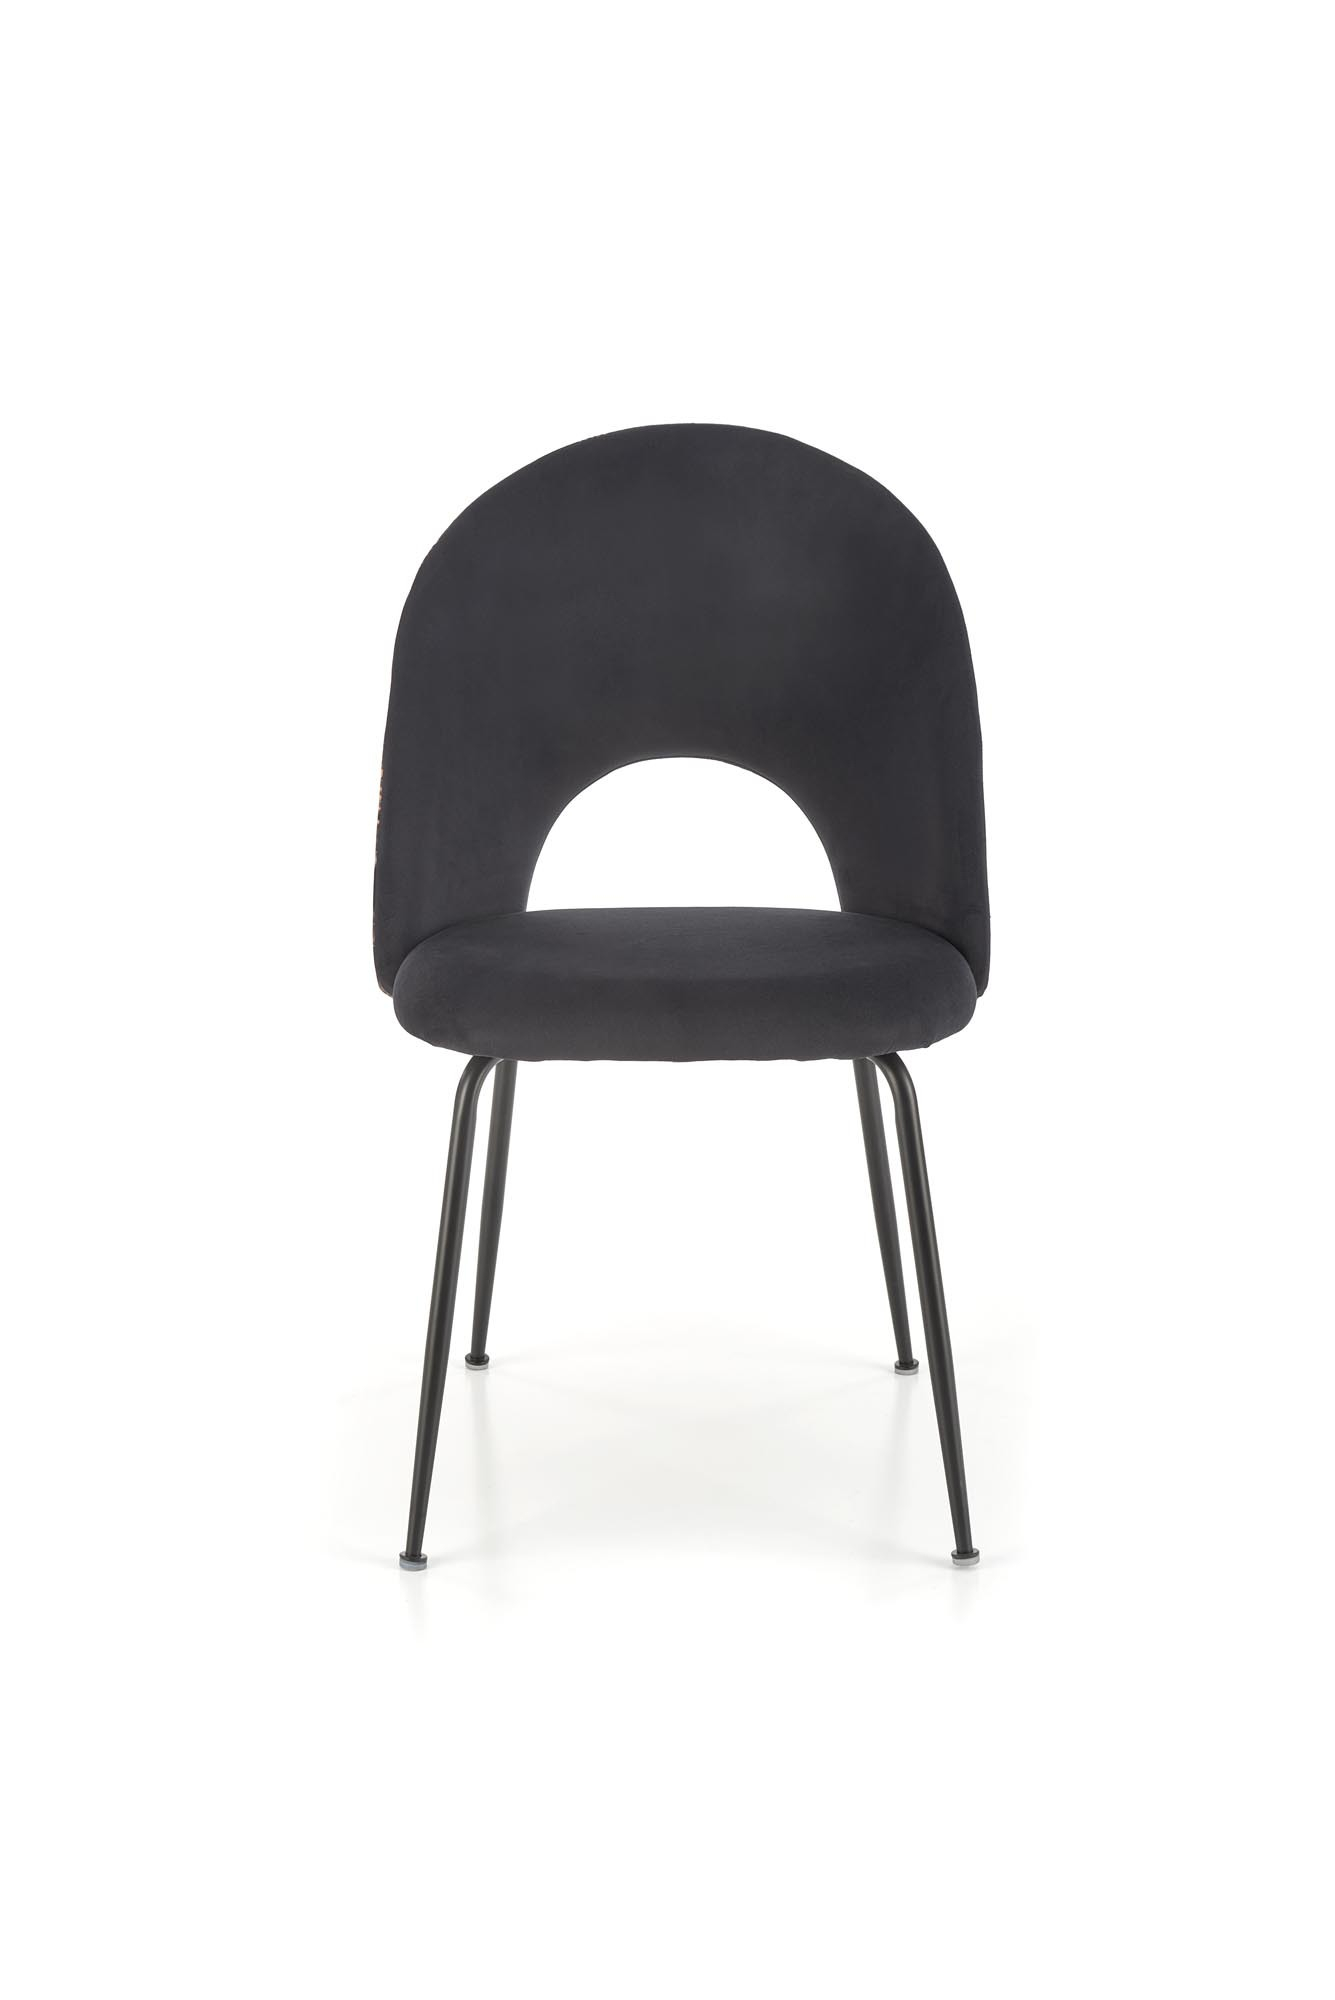 K505 krzesło wielobarwny